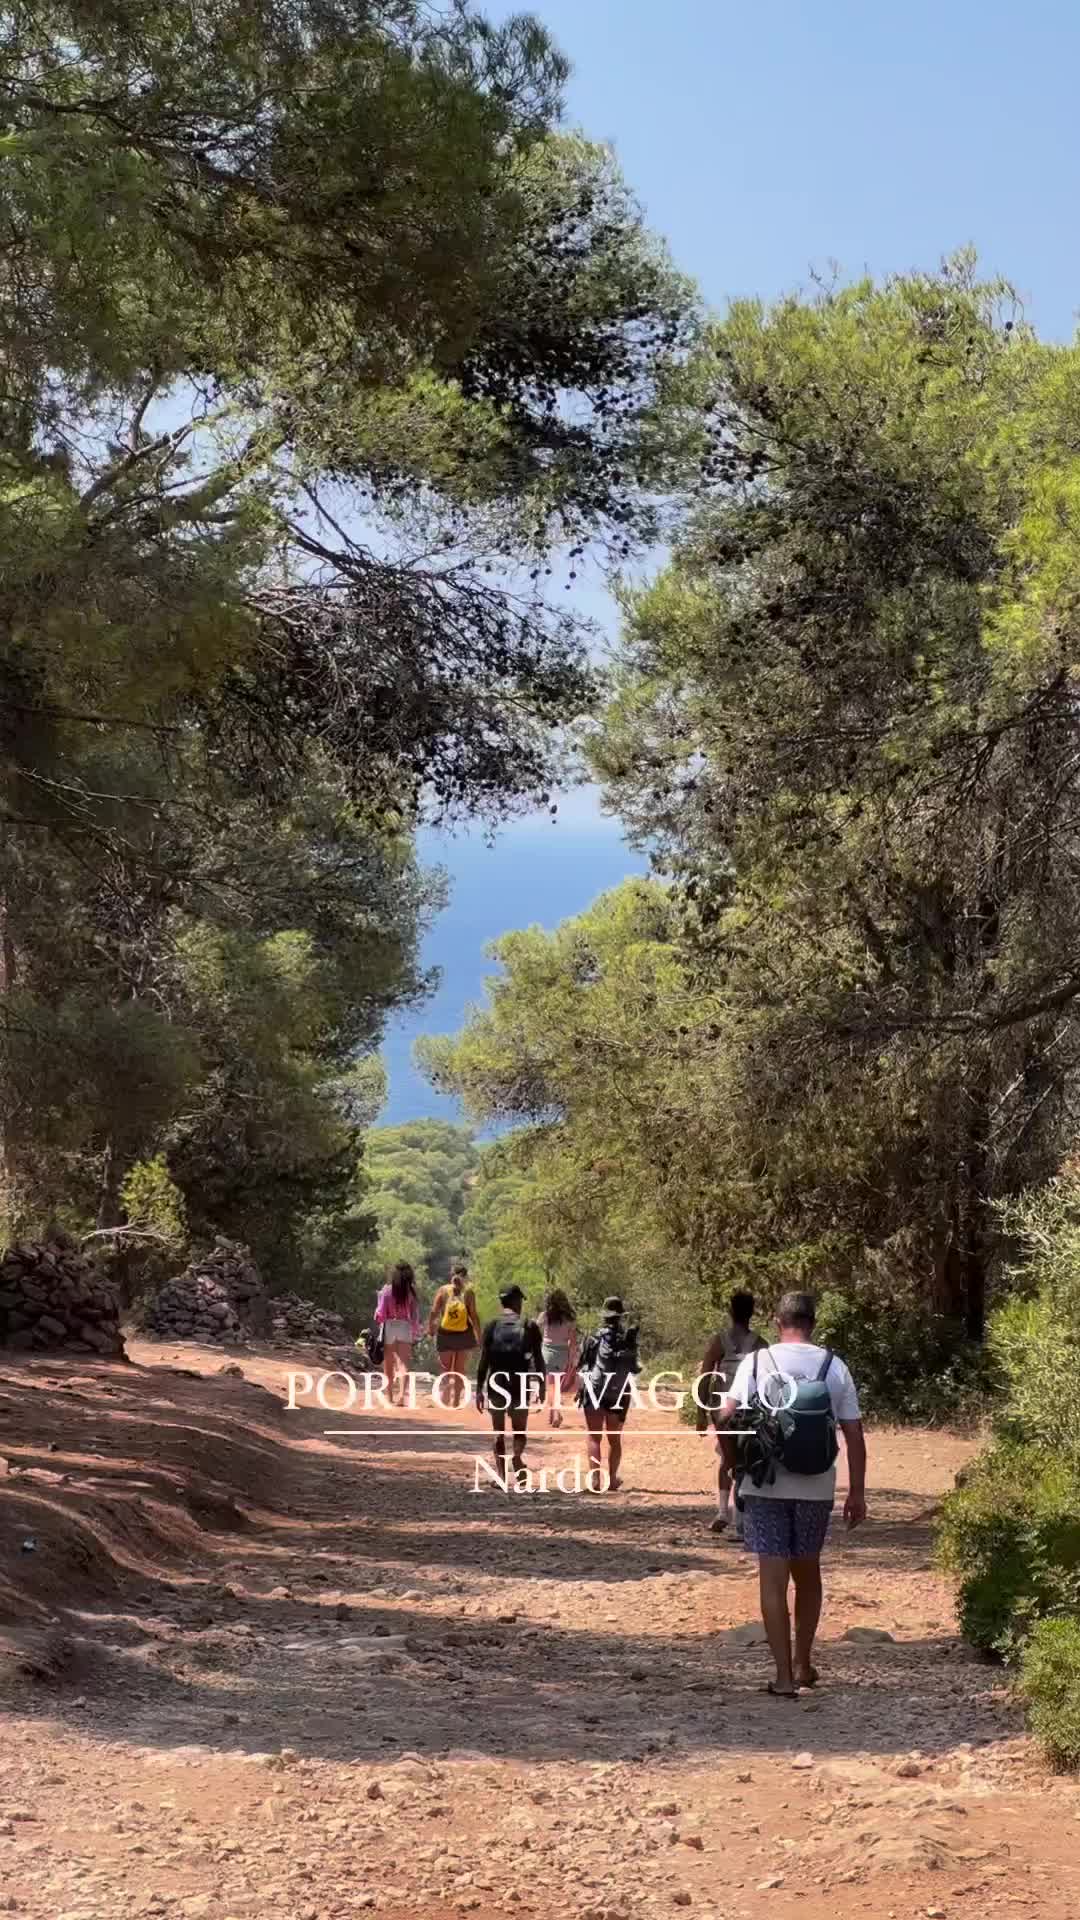 Benvenuti nel parco naturale di Porto Selvaggio, benvenuti nella natura protetta di Puglia 💚💙
.
.
.
.
.
#puglia #salento #bucketlist #mare #spiaggedasogno #ig_italia #travellingthroughtheworld #pugliagram #wonderful_places #pugliamia #map_of_italy #italysegreta #italyintheworlds #igersitalia #italia #bestplacestogo #lonelyplanet #salentodamare #beachesnresorts #howitalyfeels #lecce #mediterraneanstyle #mediterraneanlife #mediterranean #vitalenta #naturephotography  #nardò #italyfromawindow #slowlife #portoselvaggio